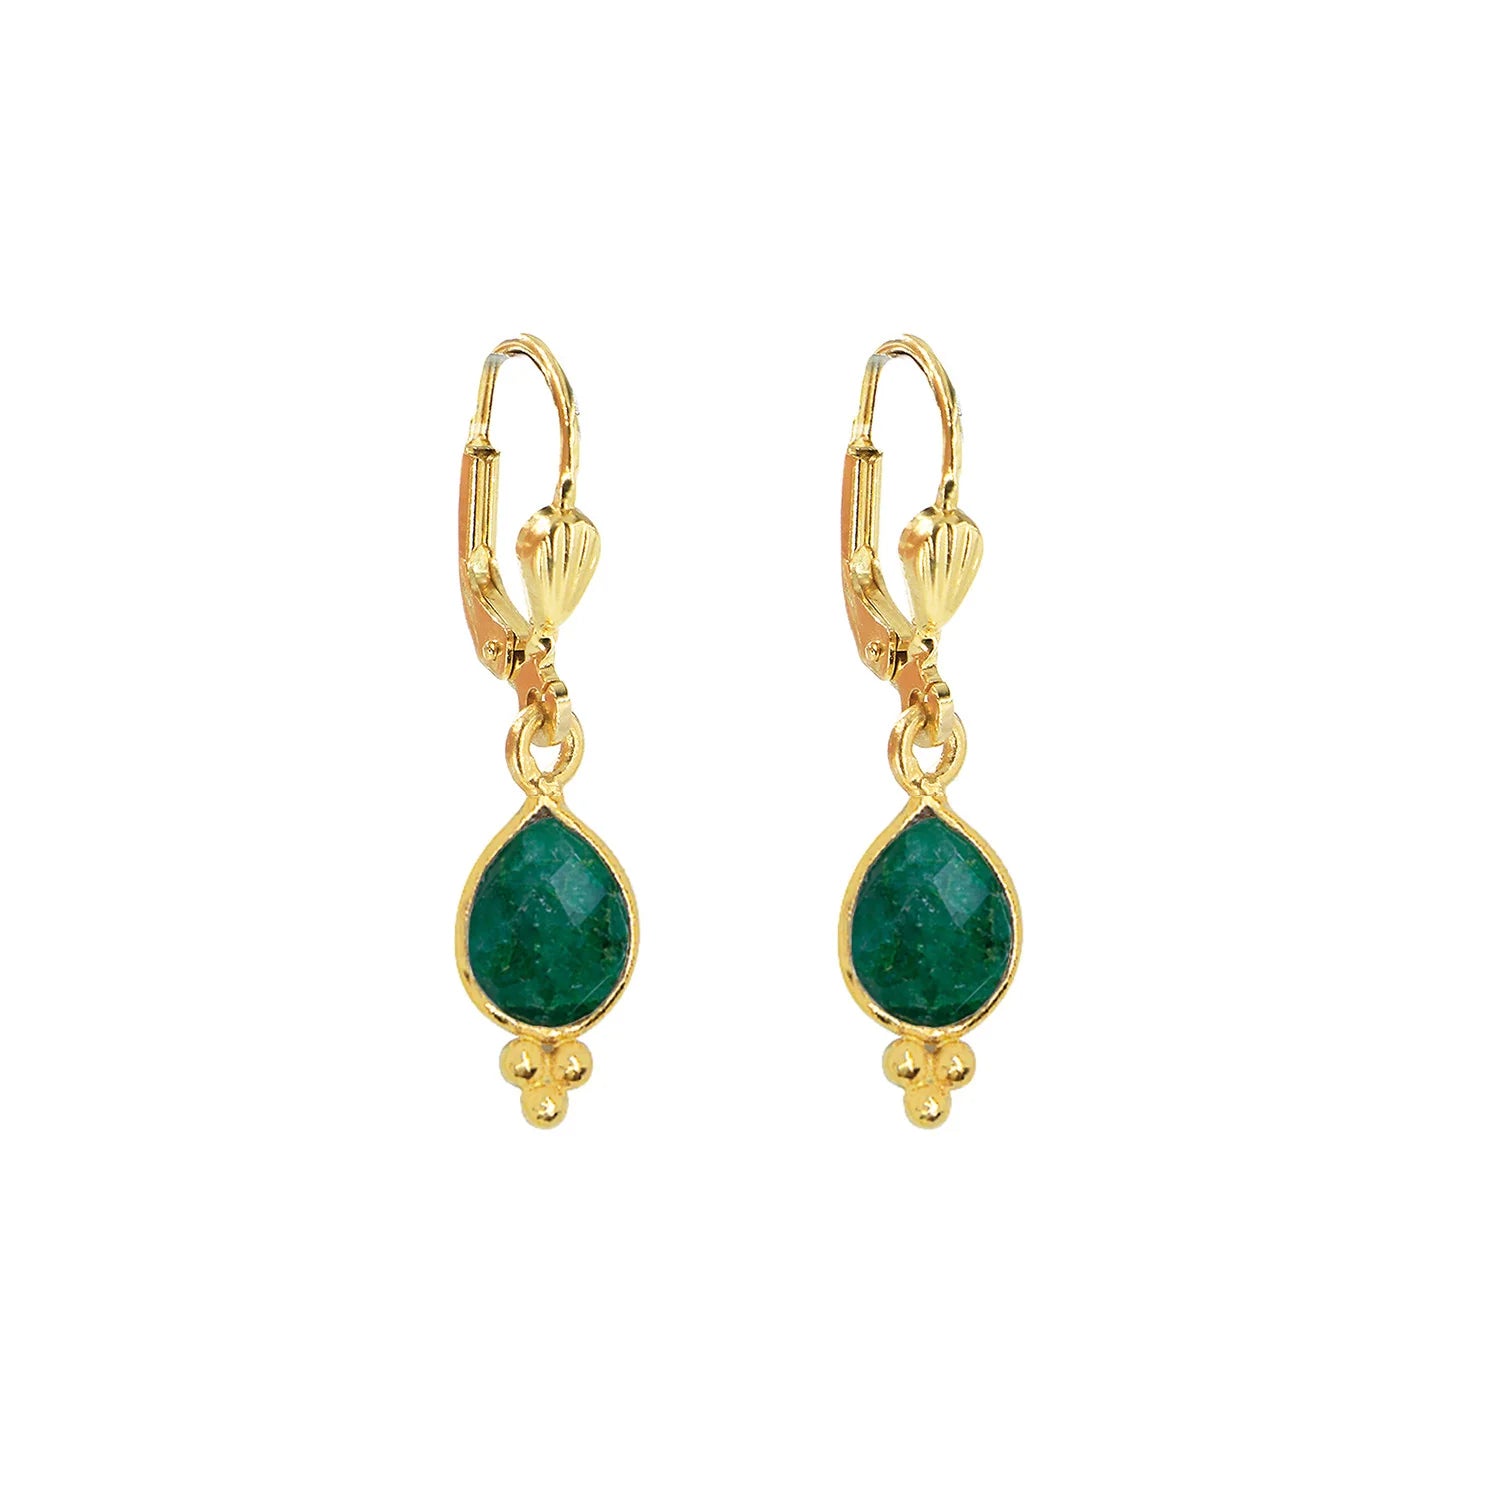 Thalia Green Earring | Nilai